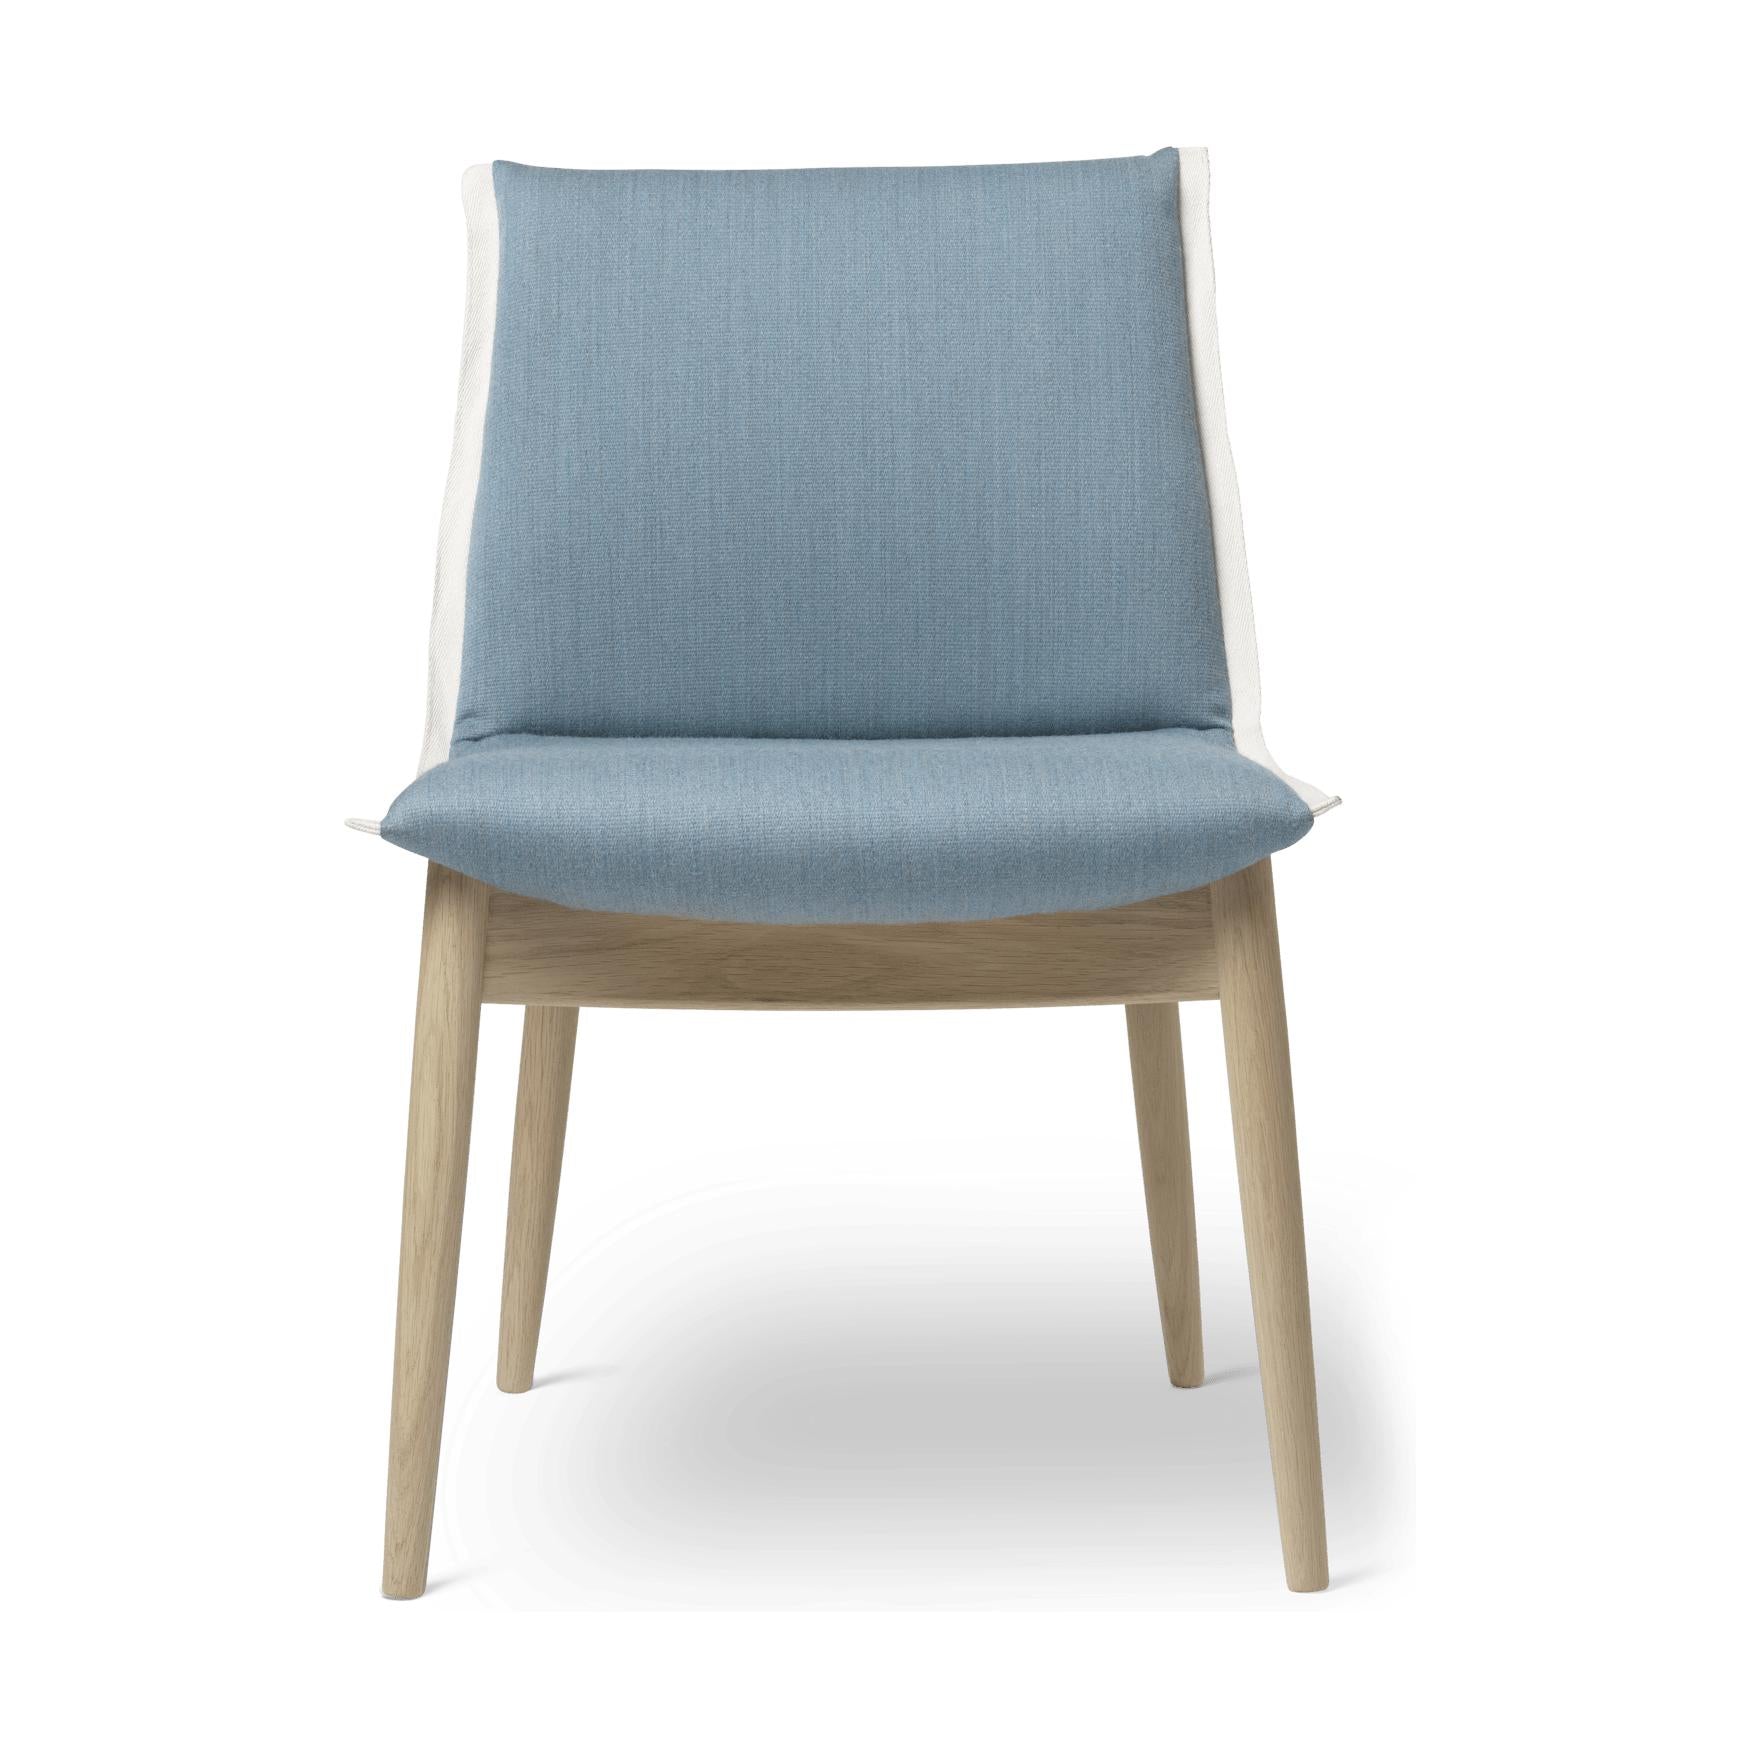 Objekové židle Carl Hansen E004, bílý naolejovaný dub, světle modrá látka